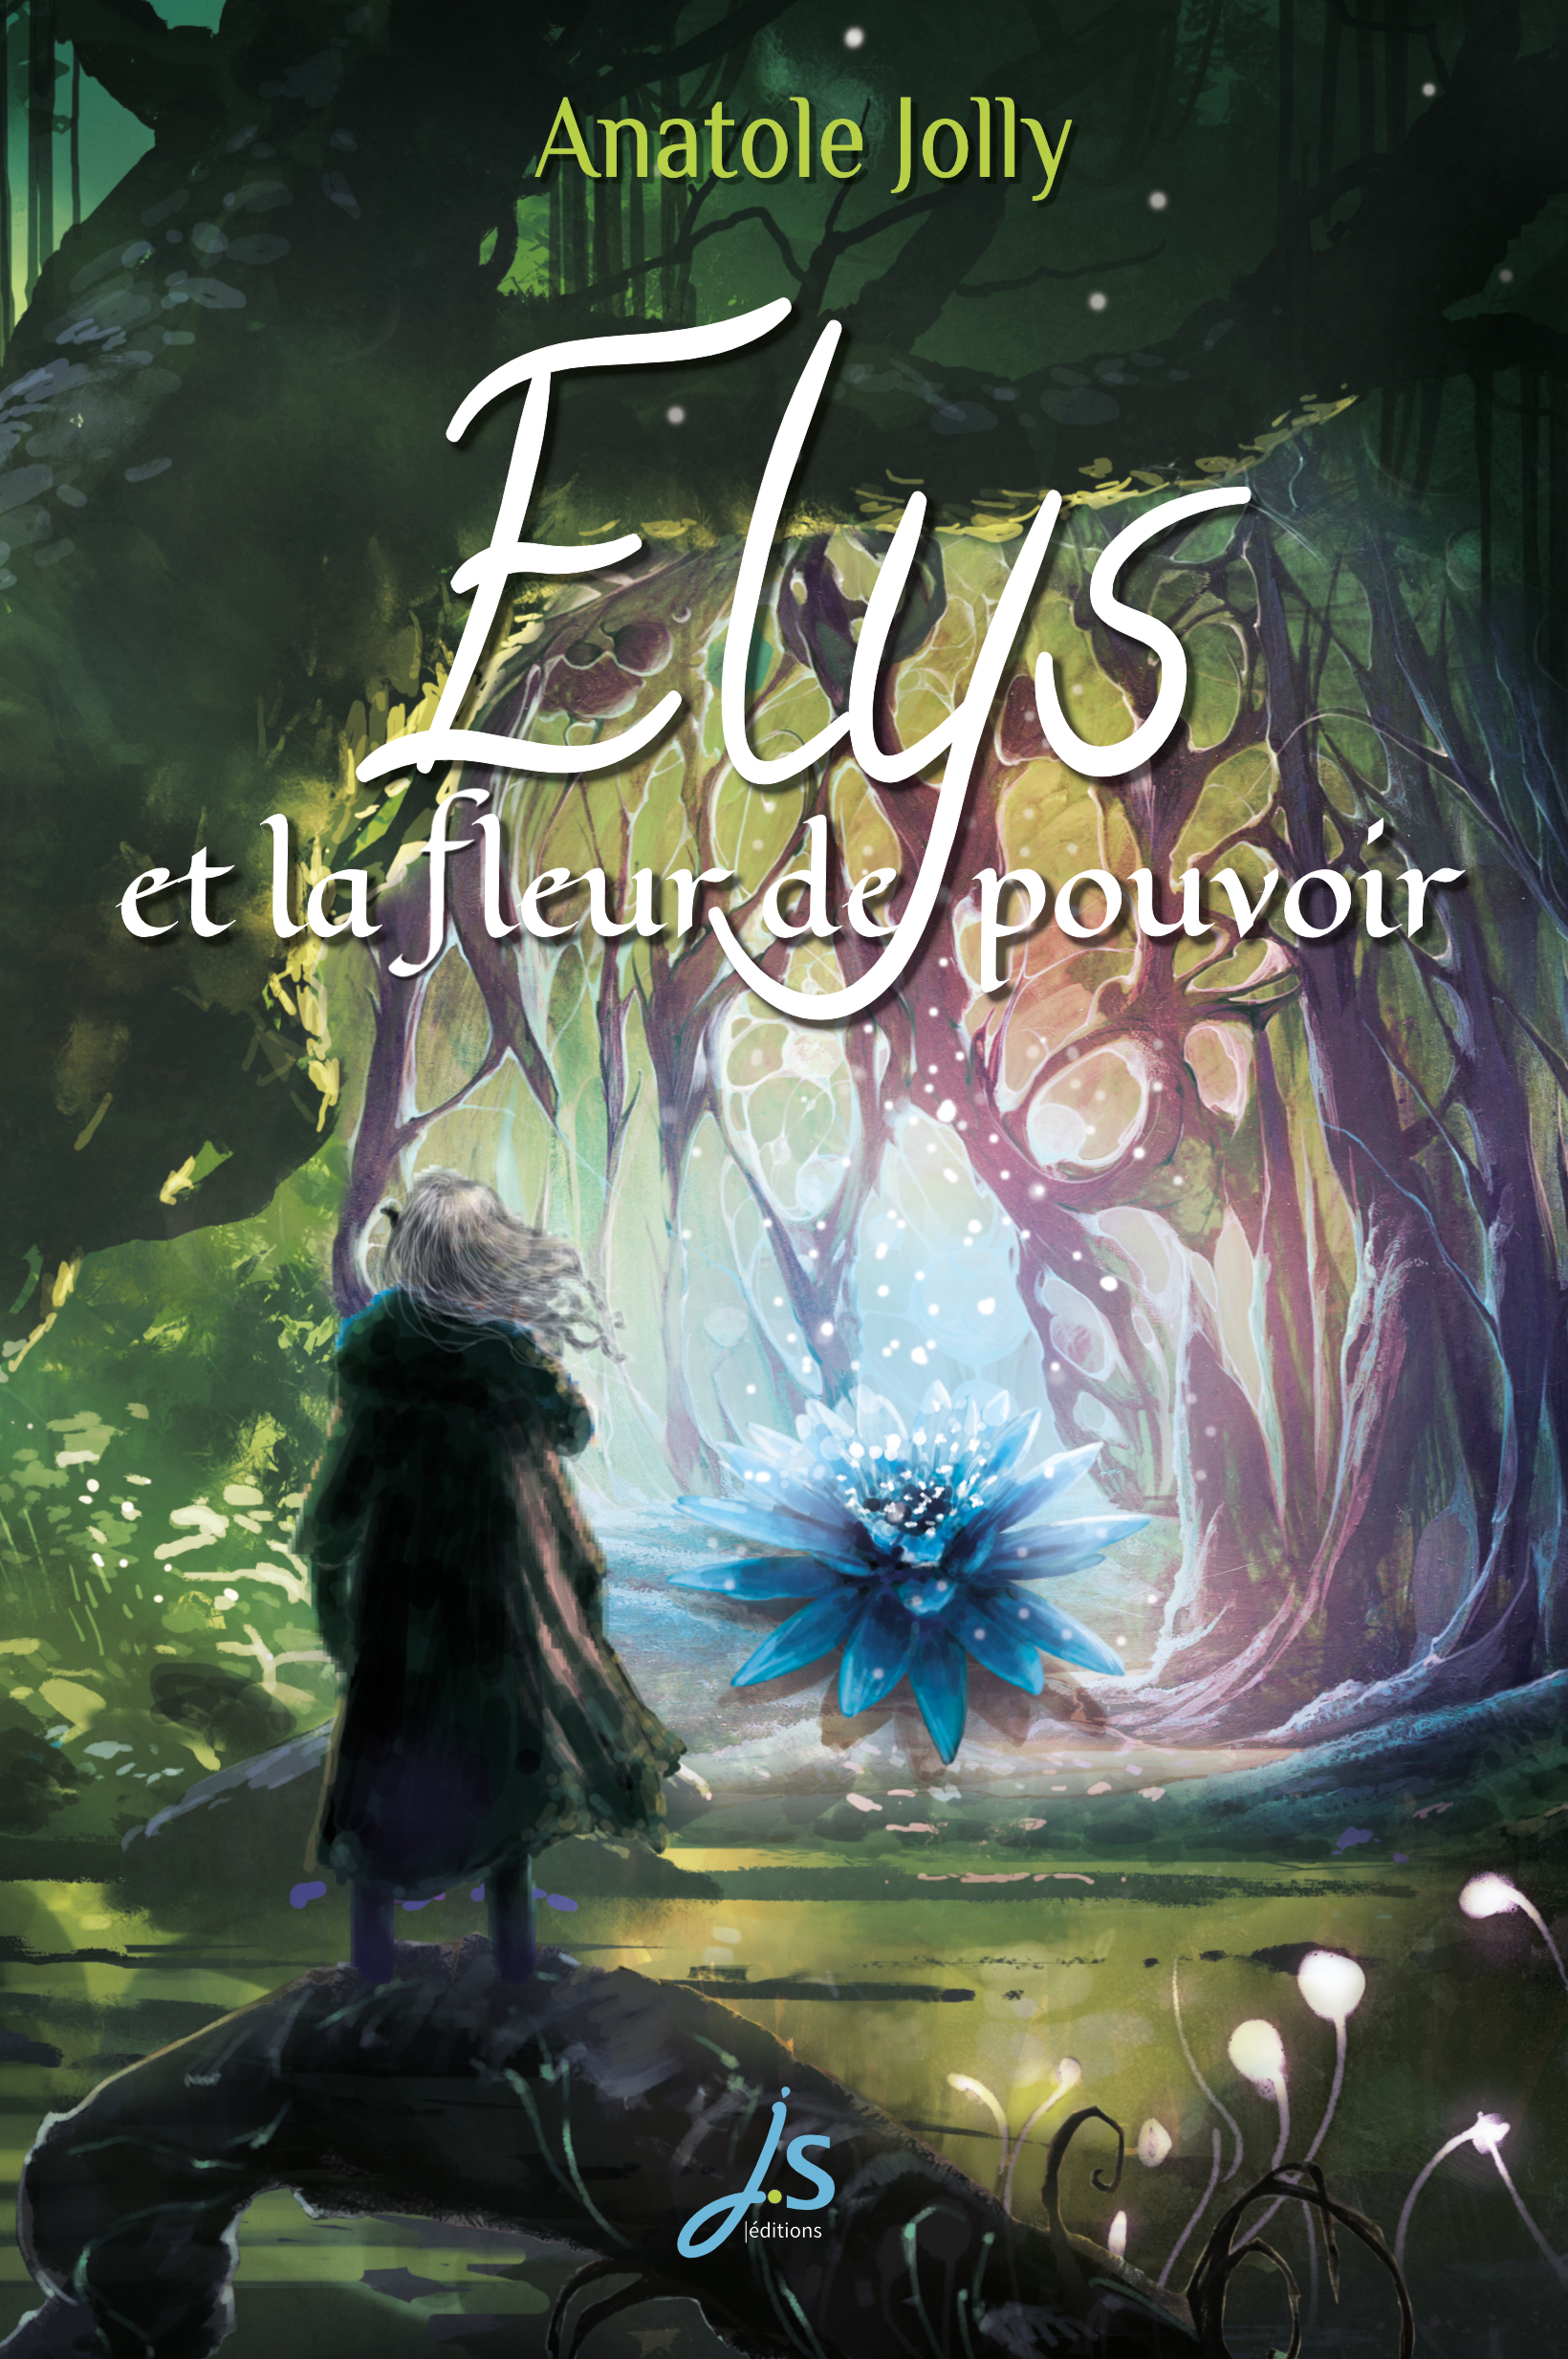 Couverture du roman de fantasy Elys et la fleur de pouvoir d'Anatole Jolly. Dans une forêt profonde verte, une silhouette de dos observe une fleur géante bleue.